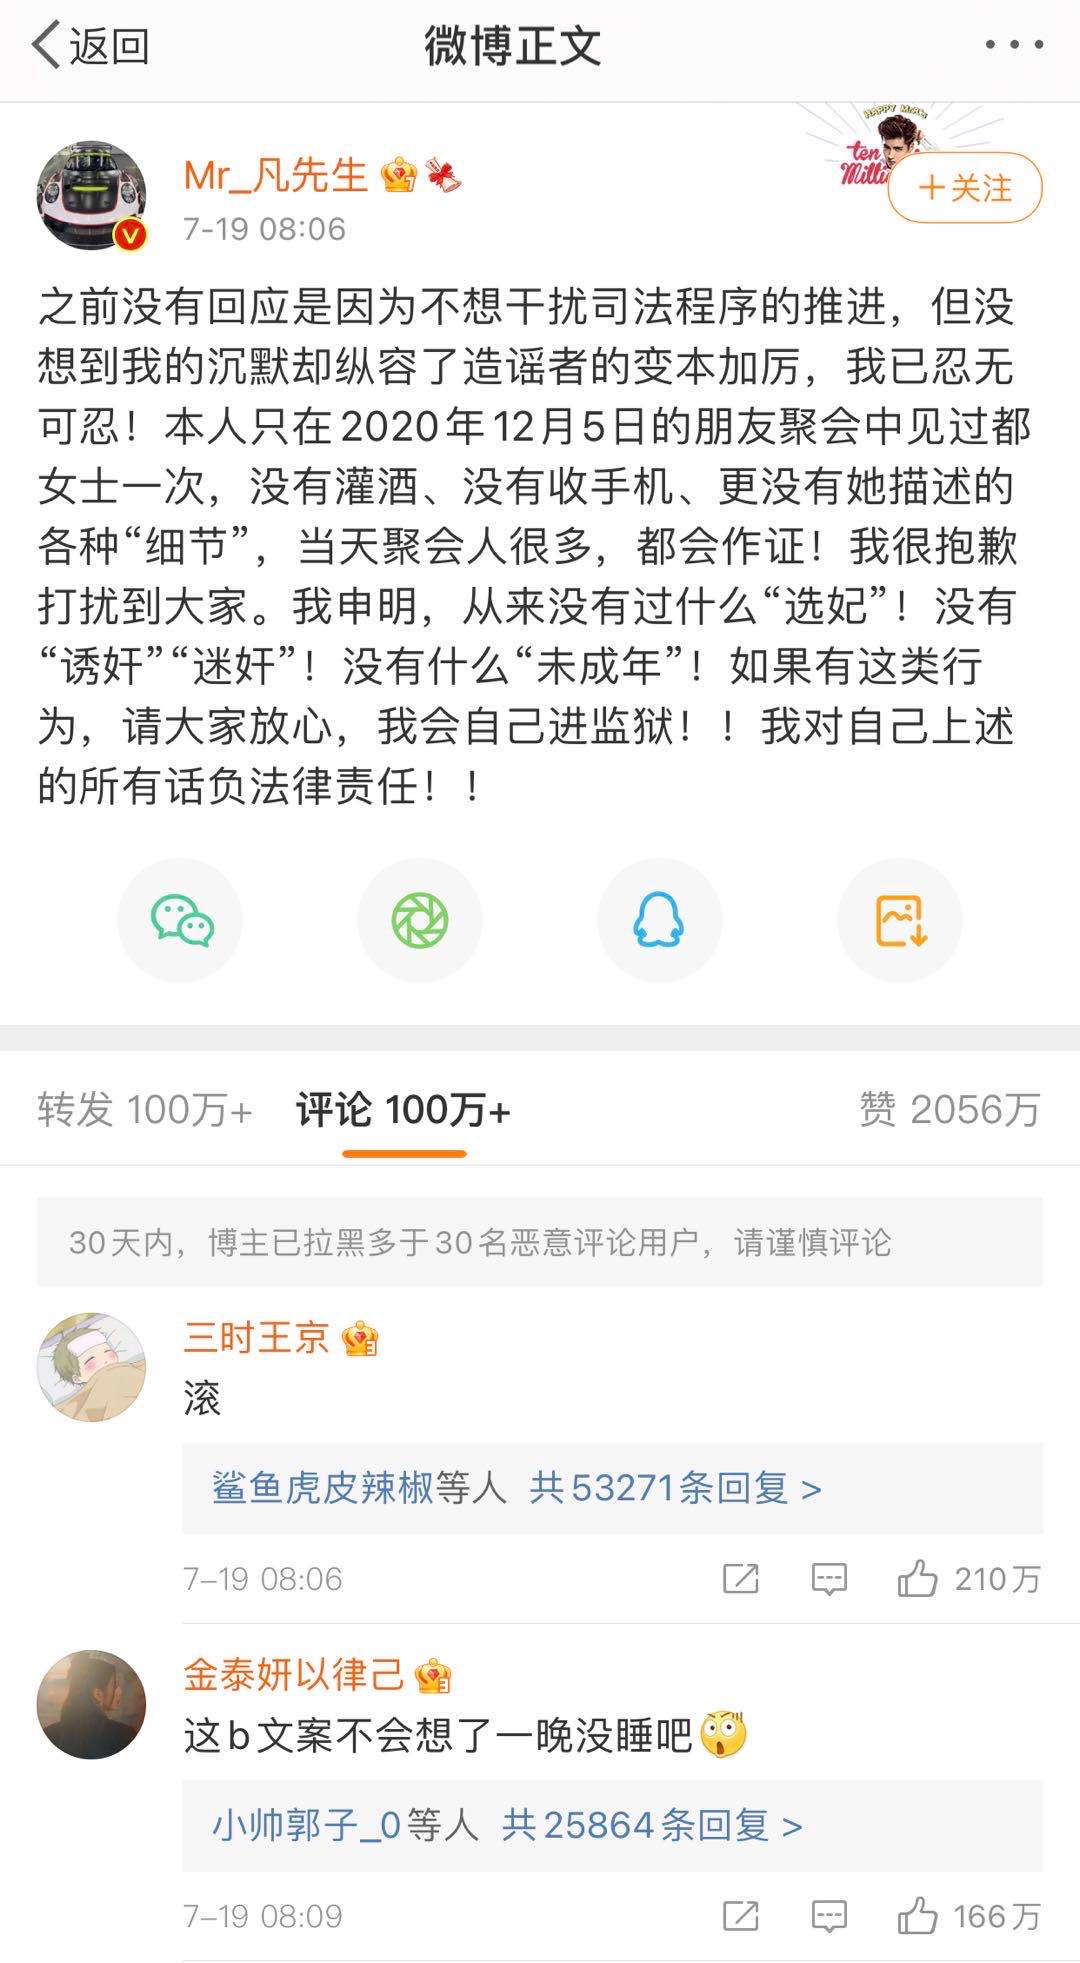 吴亦凡涉嫌强奸被刑拘 阅文集团10天跌逾13%